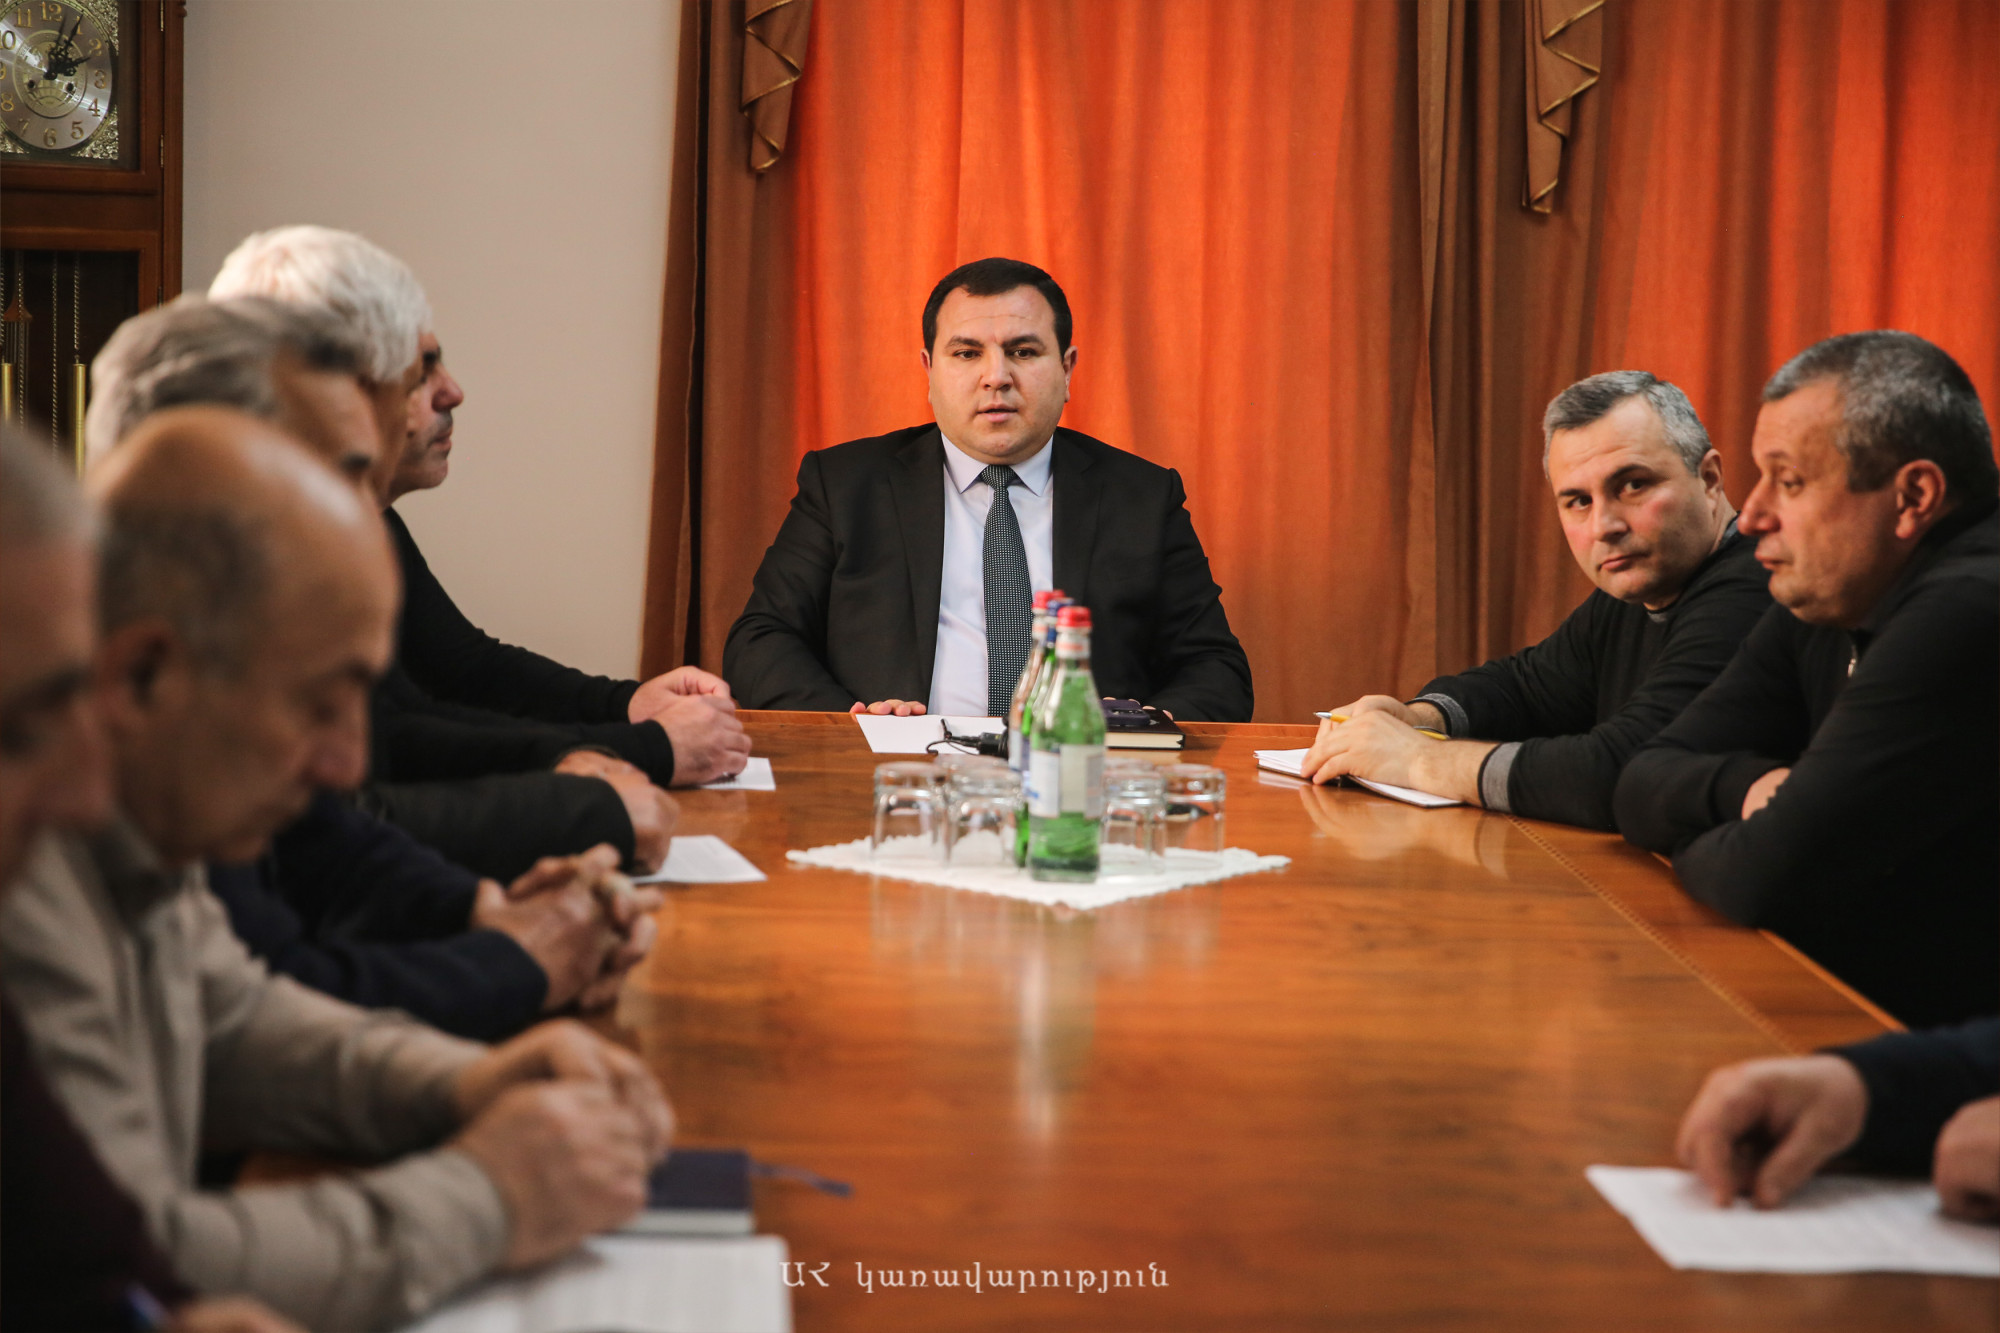 Menteri Negara Bagian Artsakh menerima anggota LSM “Cadangan Tentara Artsakh” – Berita dari Armenia